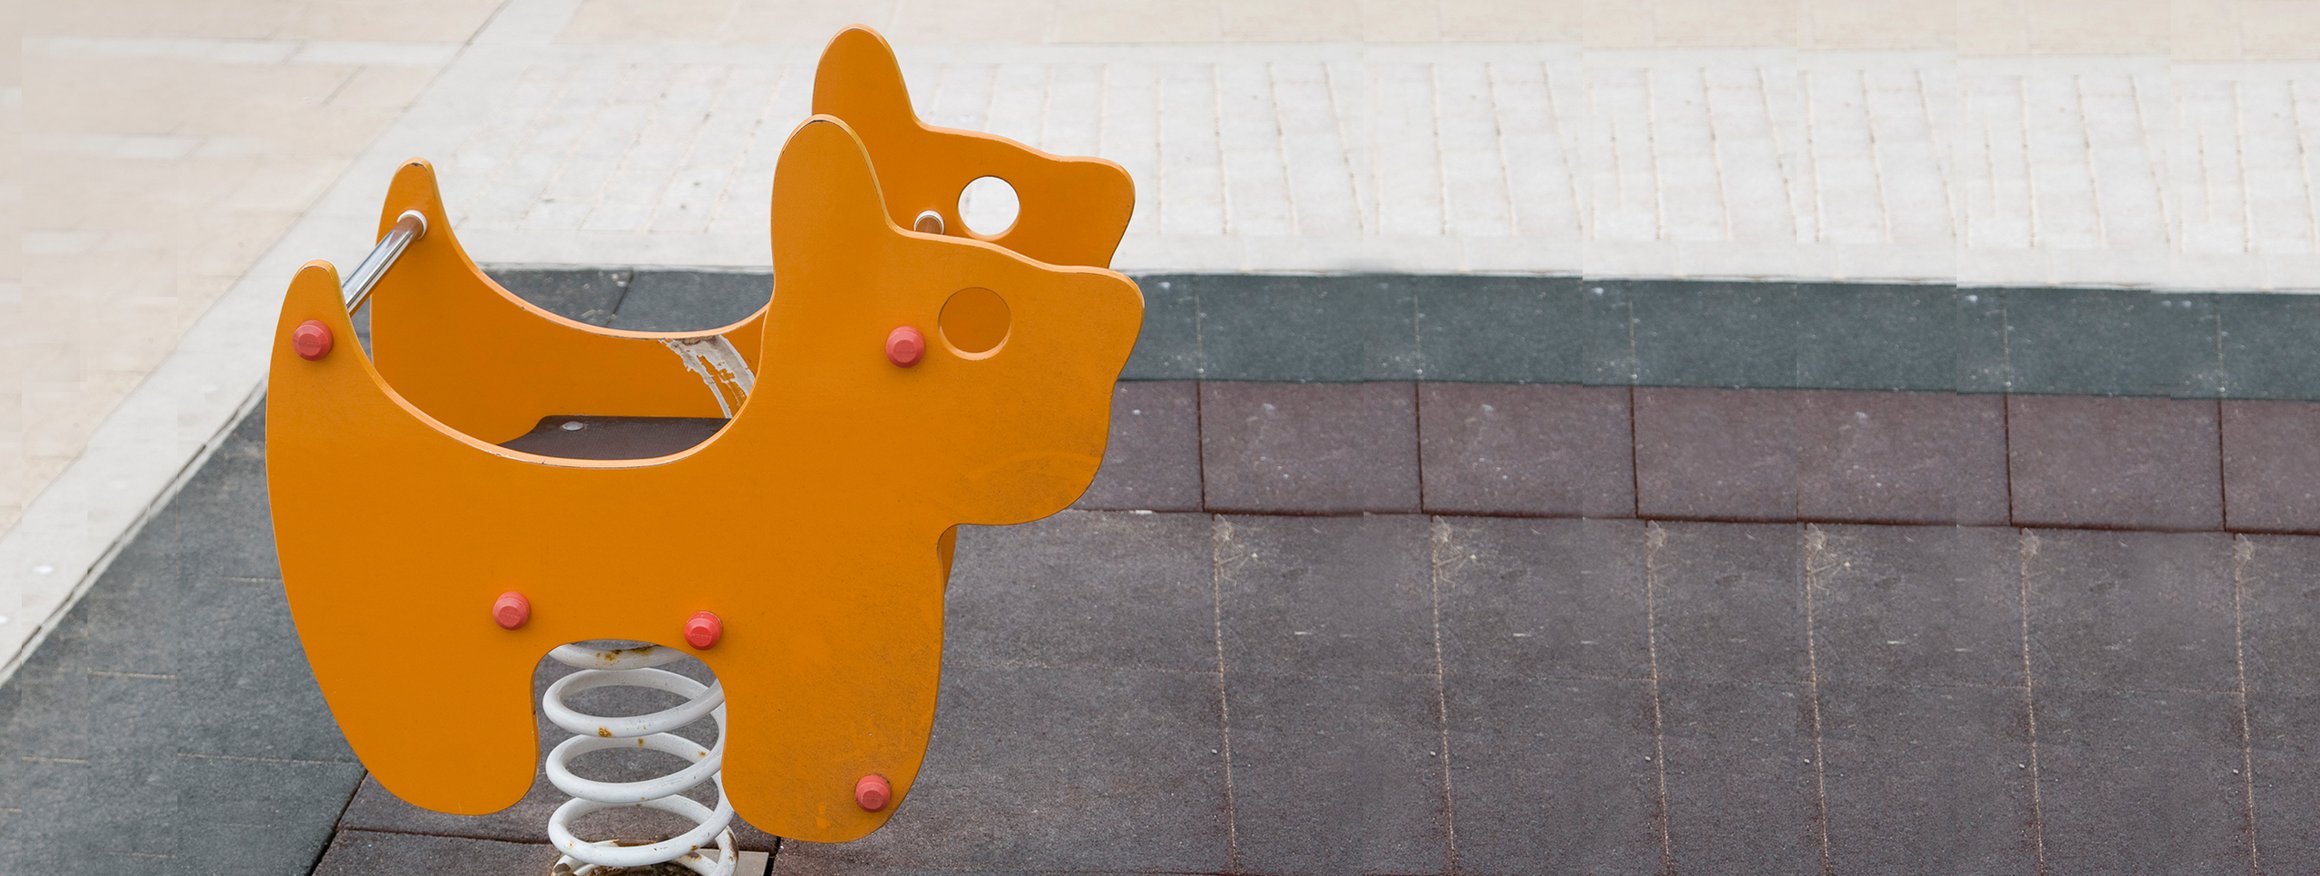 Ein orangefarbenes Wippgerät in Tierform steht auf einem Kinderspielplatz und der Boden ist betoniert